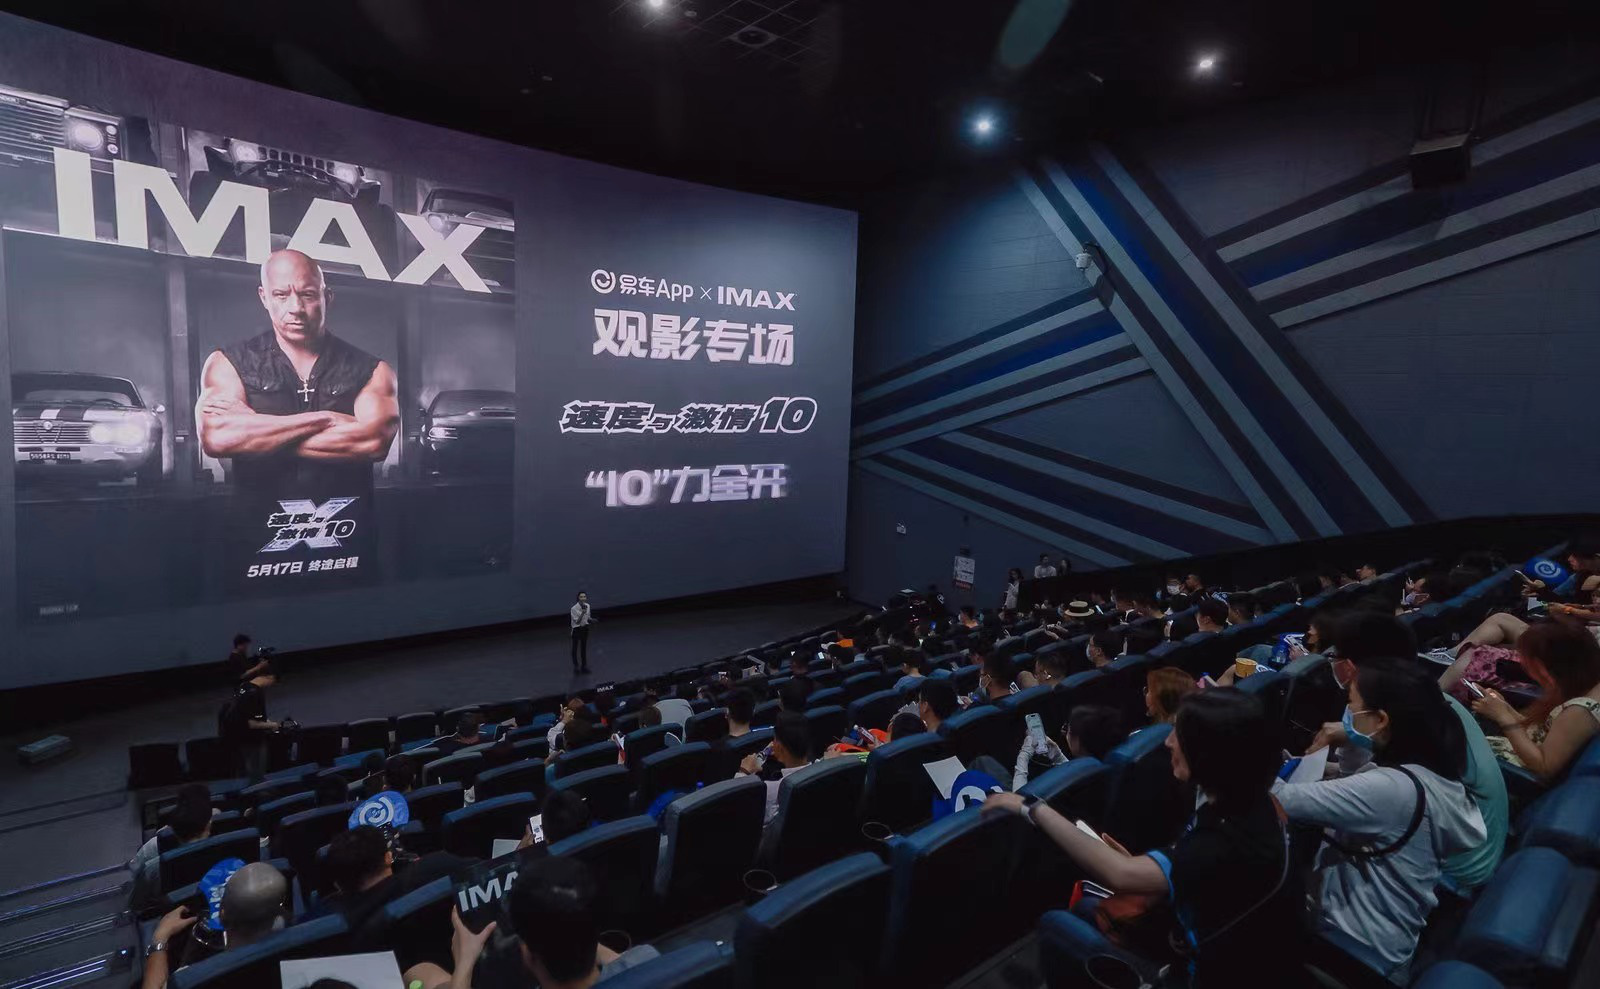 《速度与激情10》IMAX观影 飙车动作场面获好评